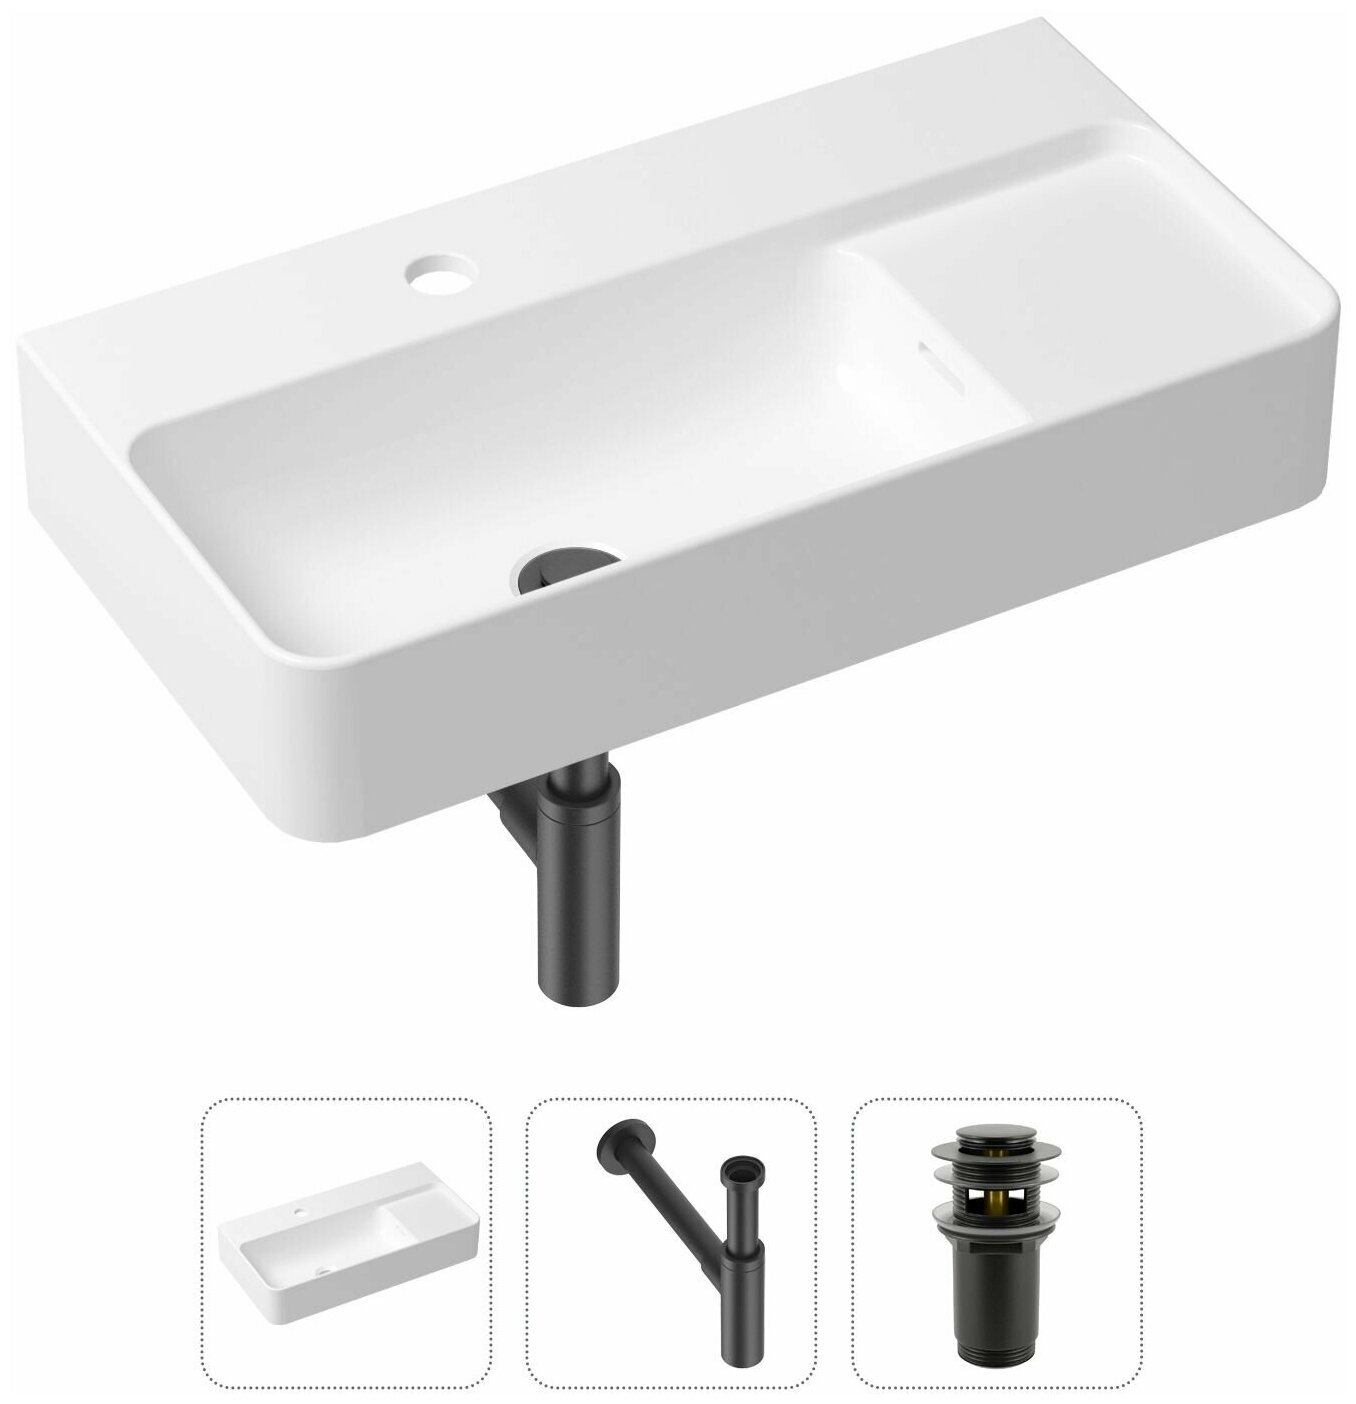 Комплект 3 в 1 Lavinia Boho Bathroom Sink 21520524: накладная фарфоровая раковина 60 см, металлический сифон, донный клапан